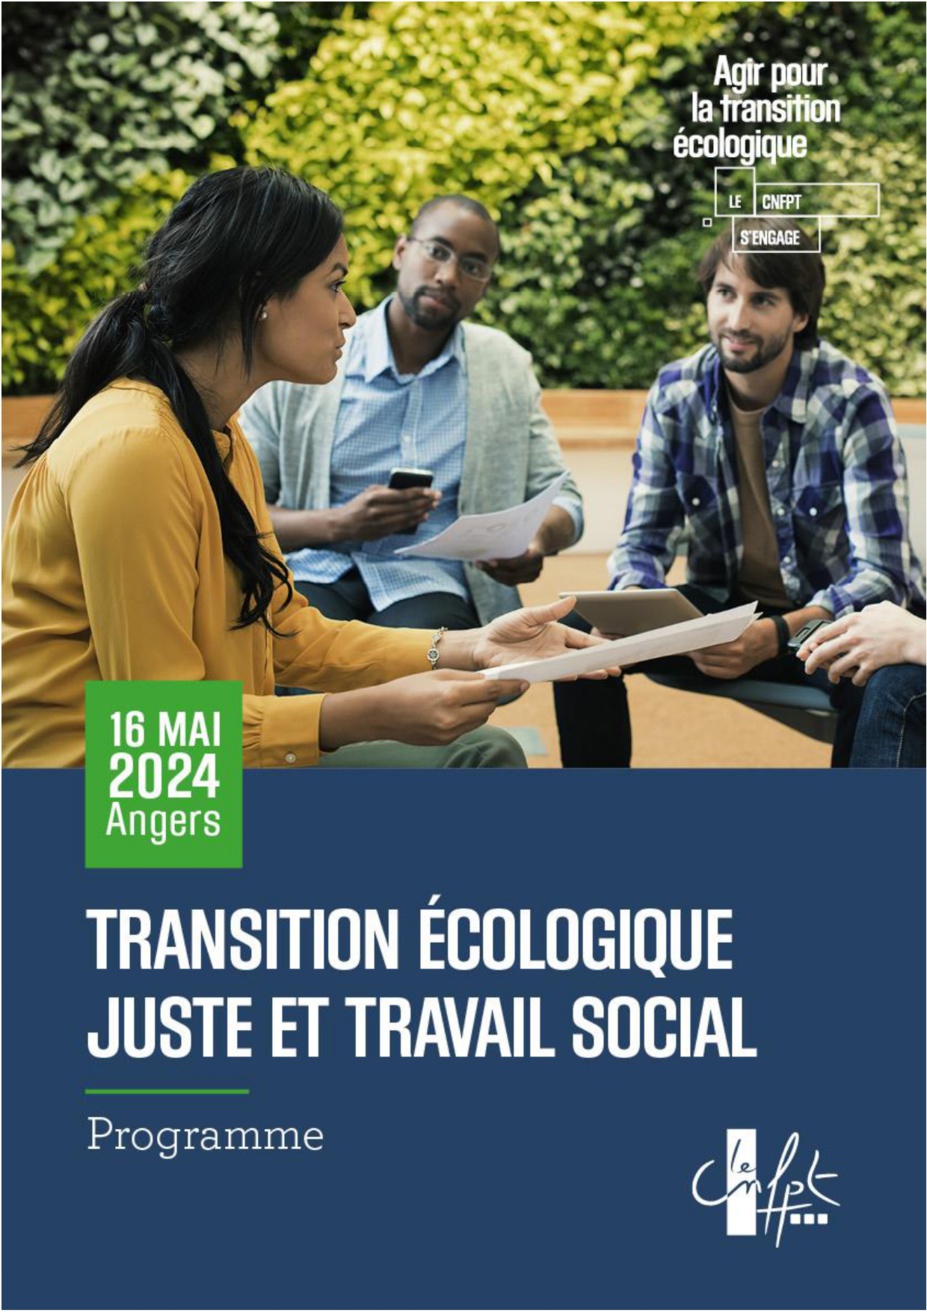 TRANSITION ECOLOGIQUE JUSTE ET TRAVAIL SOCIAL